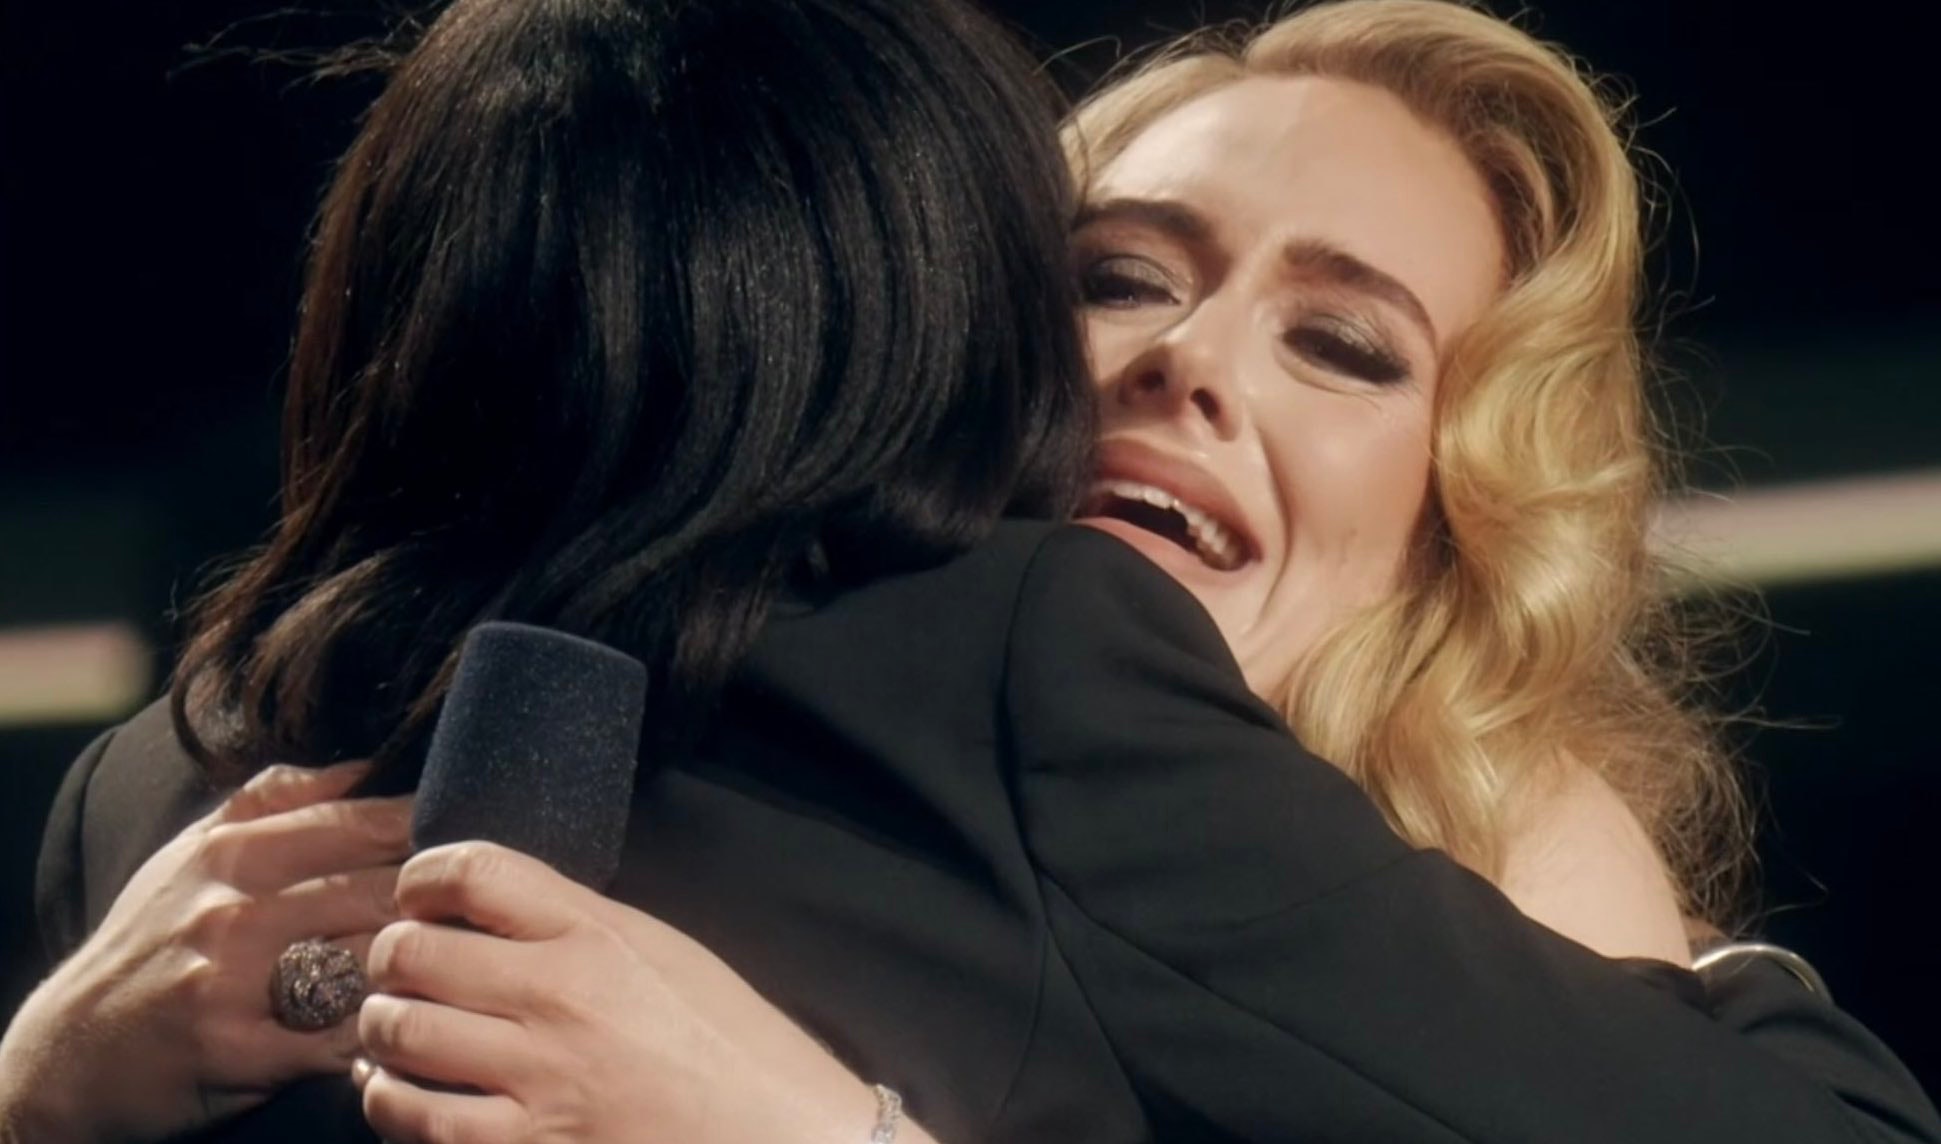 Η Adele έκλαψε κατά τη διάρκεια μιας έκπληξης στη σκηνή με τον δάσκαλο της παιδικής της ηλικίας